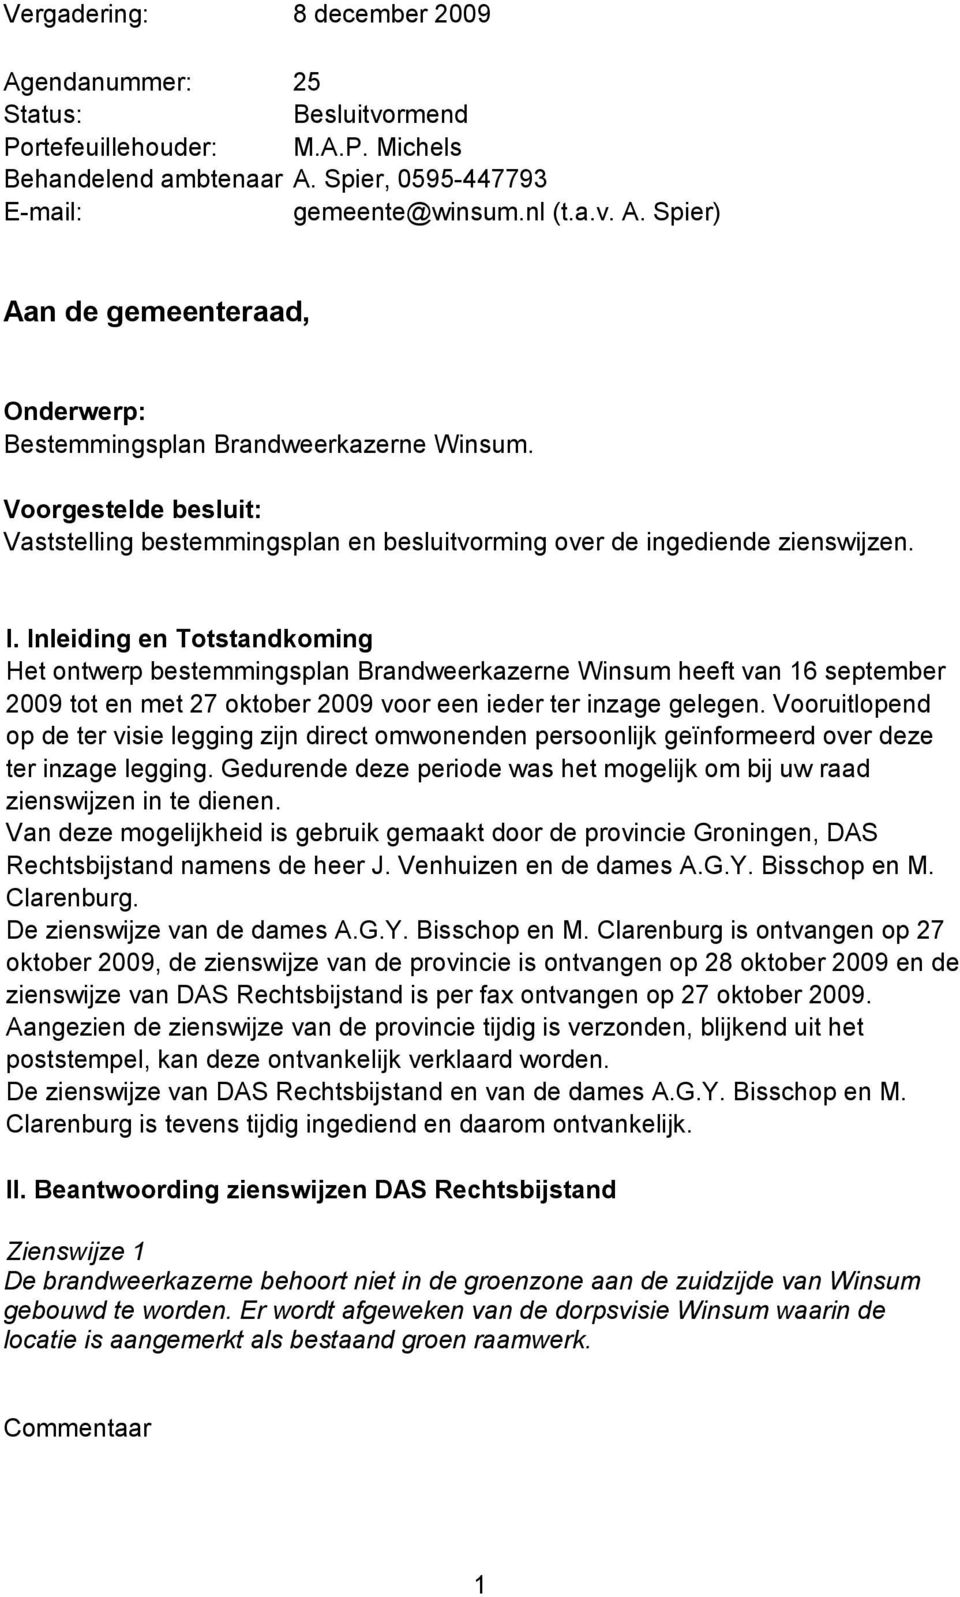 Inleiding en Totstandkoming Het ontwerp bestemmingsplan Brandweerkazerne Winsum heeft van 16 september 2009 tot en met 27 oktober 2009 voor een ieder ter inzage gelegen.